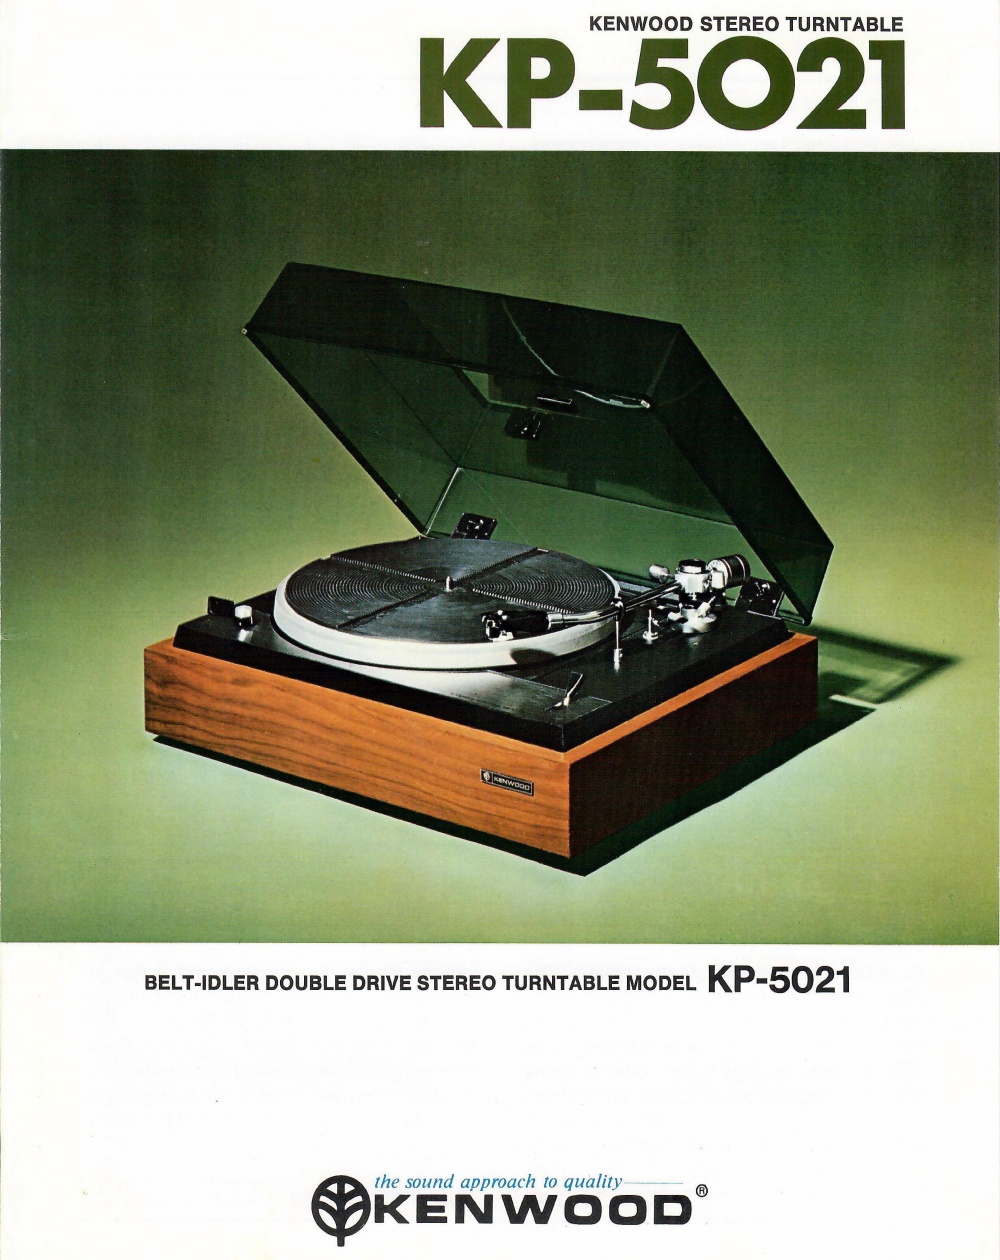 Kenwood KP-5021 Turntable Reviews - The Vinyl Engine